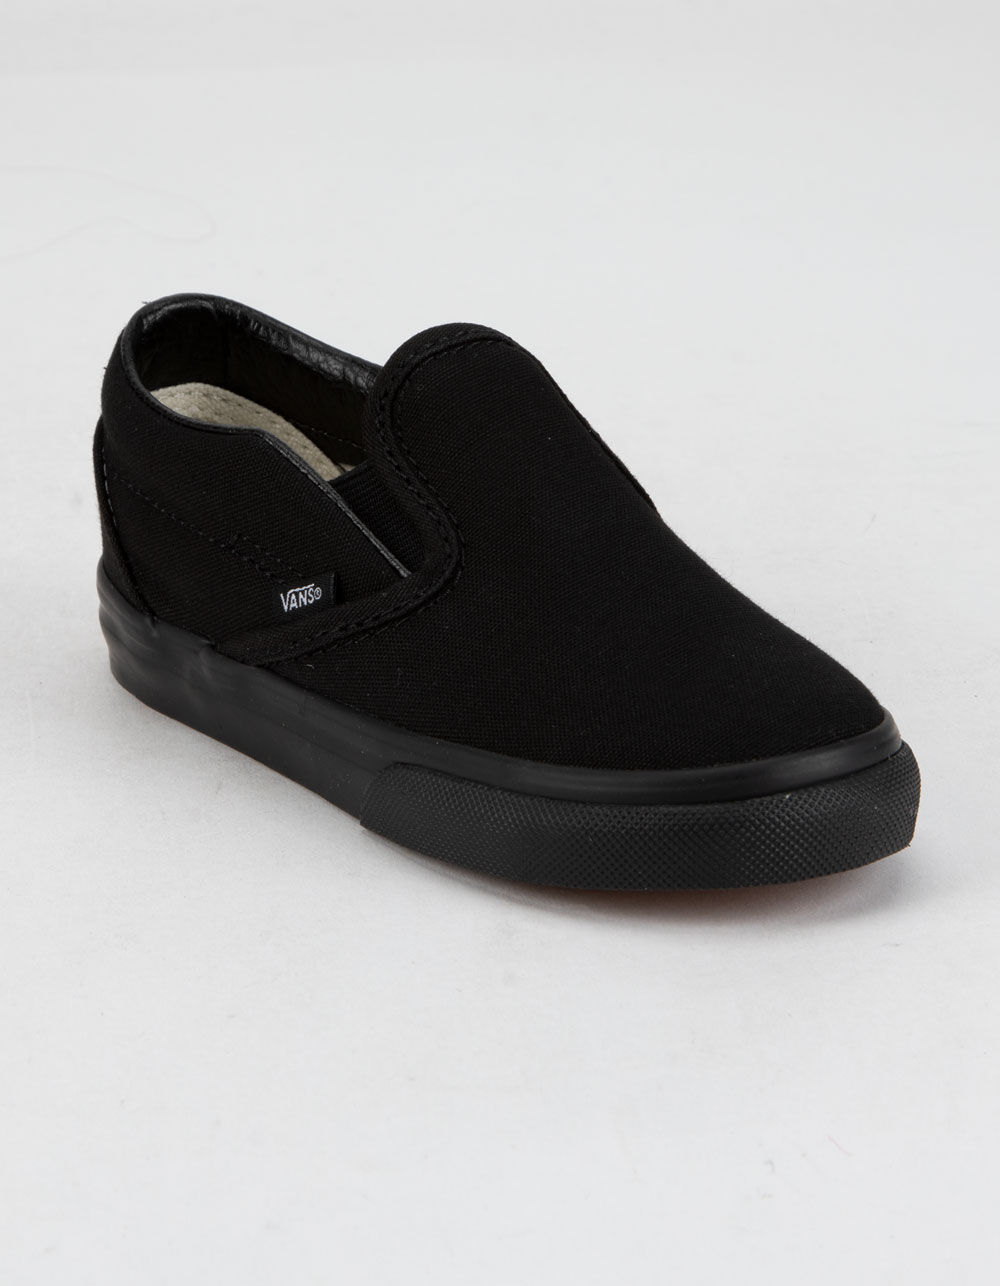 VANS Toddler Classic Slip-On Black Shoes image number 1